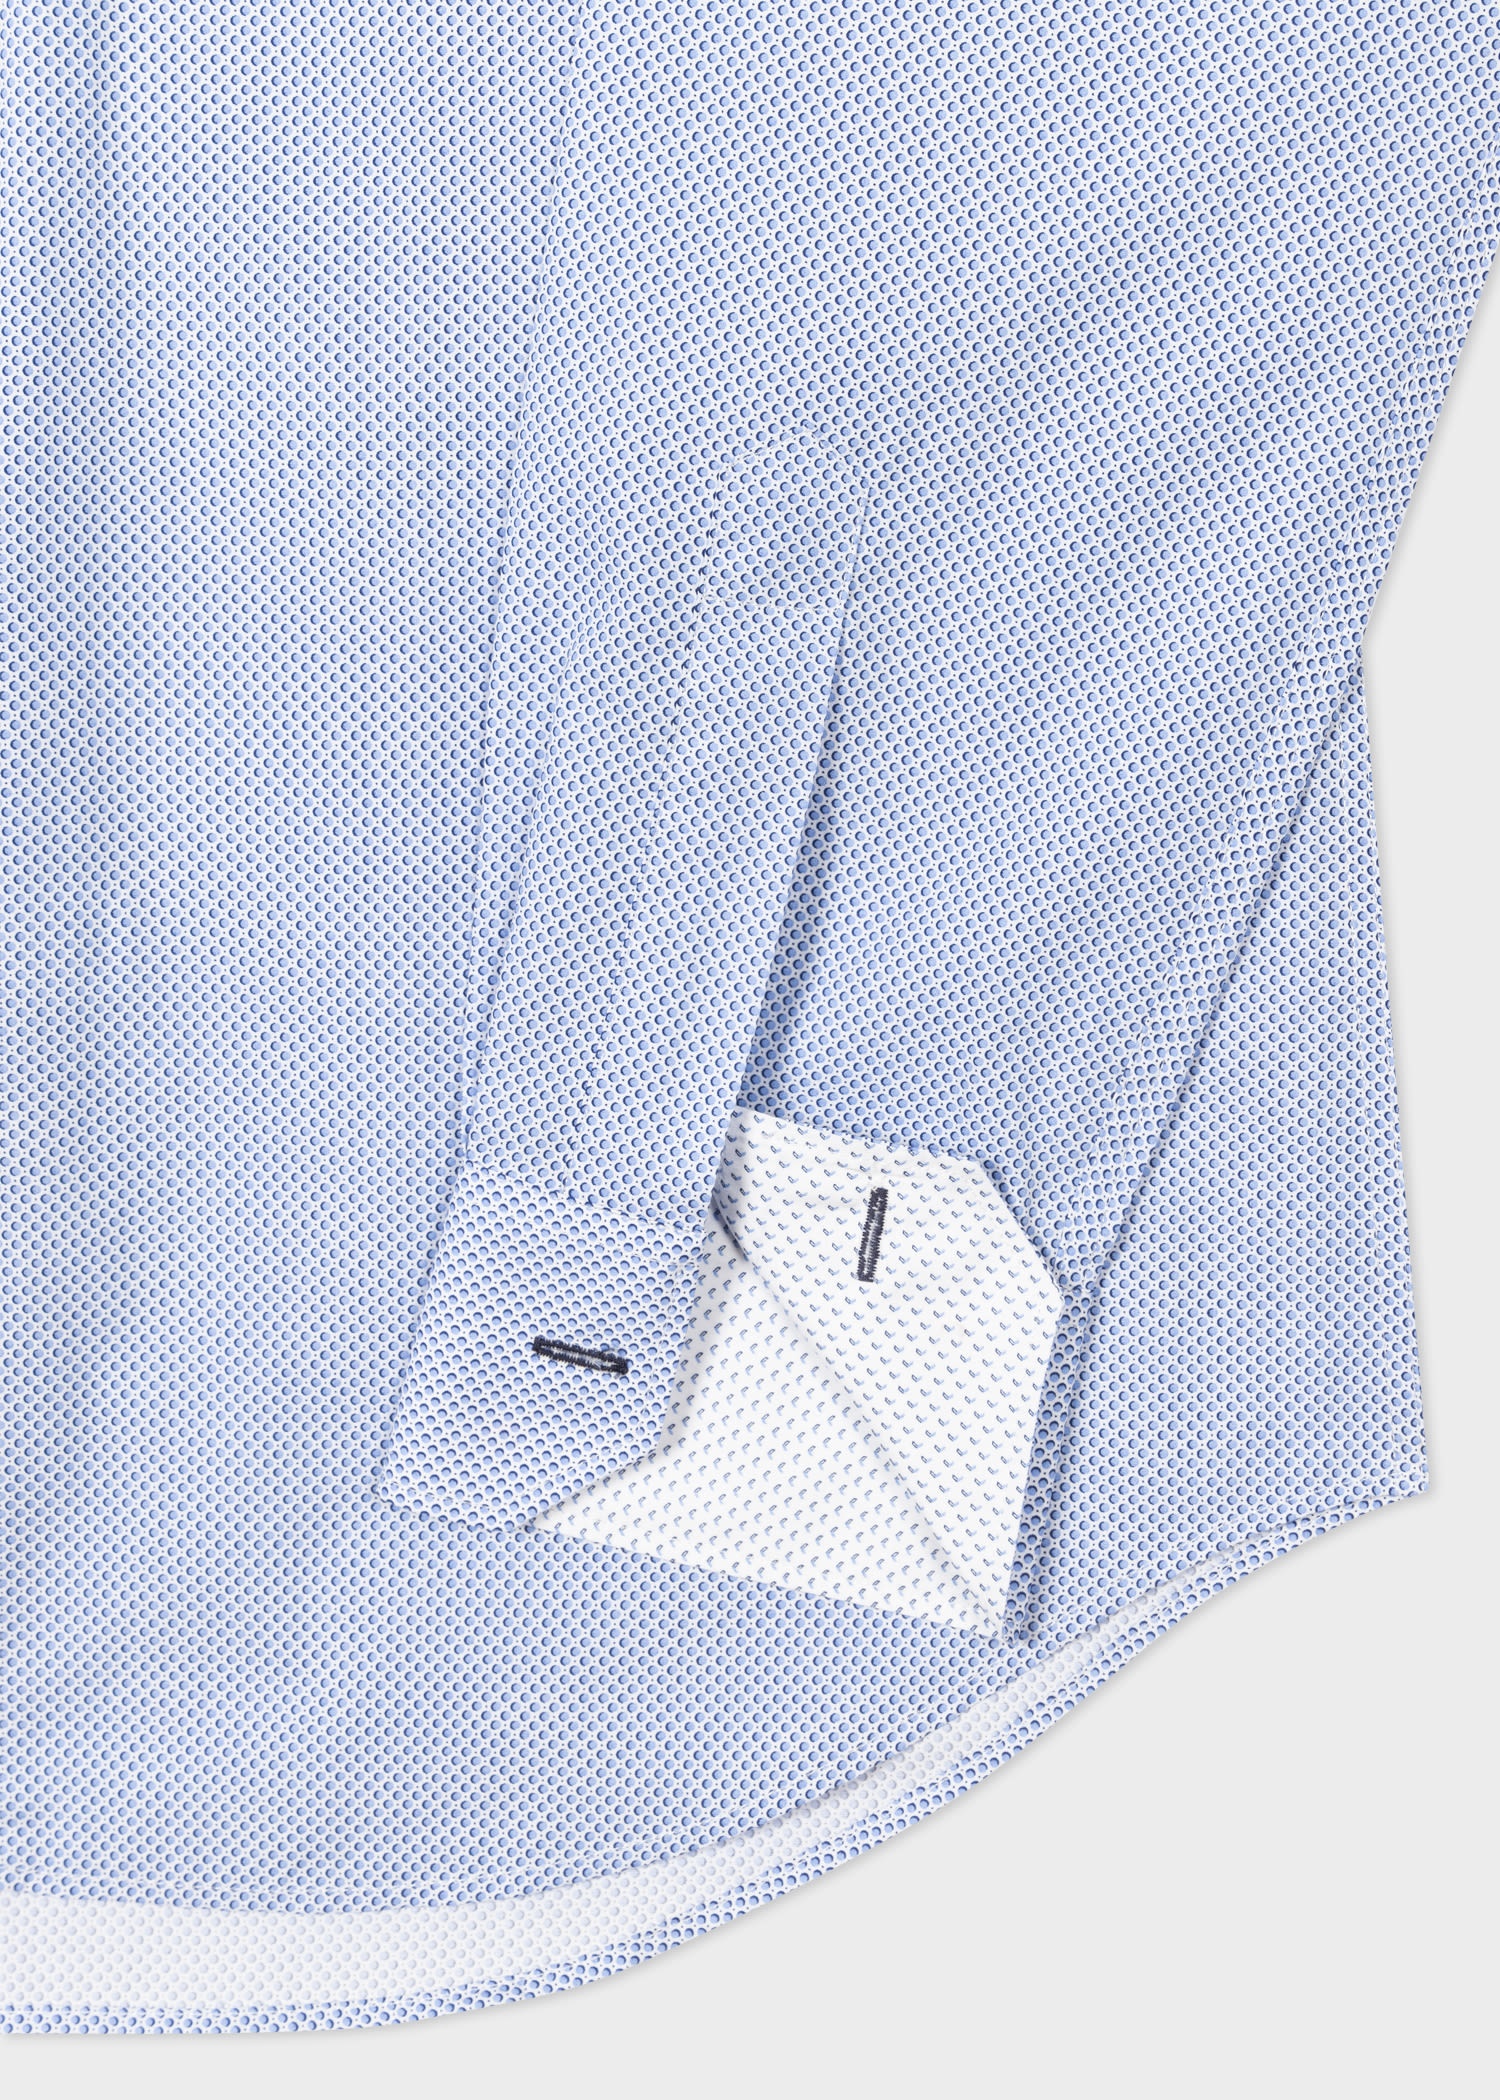 Blue 'Micro Dot' Print Cotton Shirt - 2